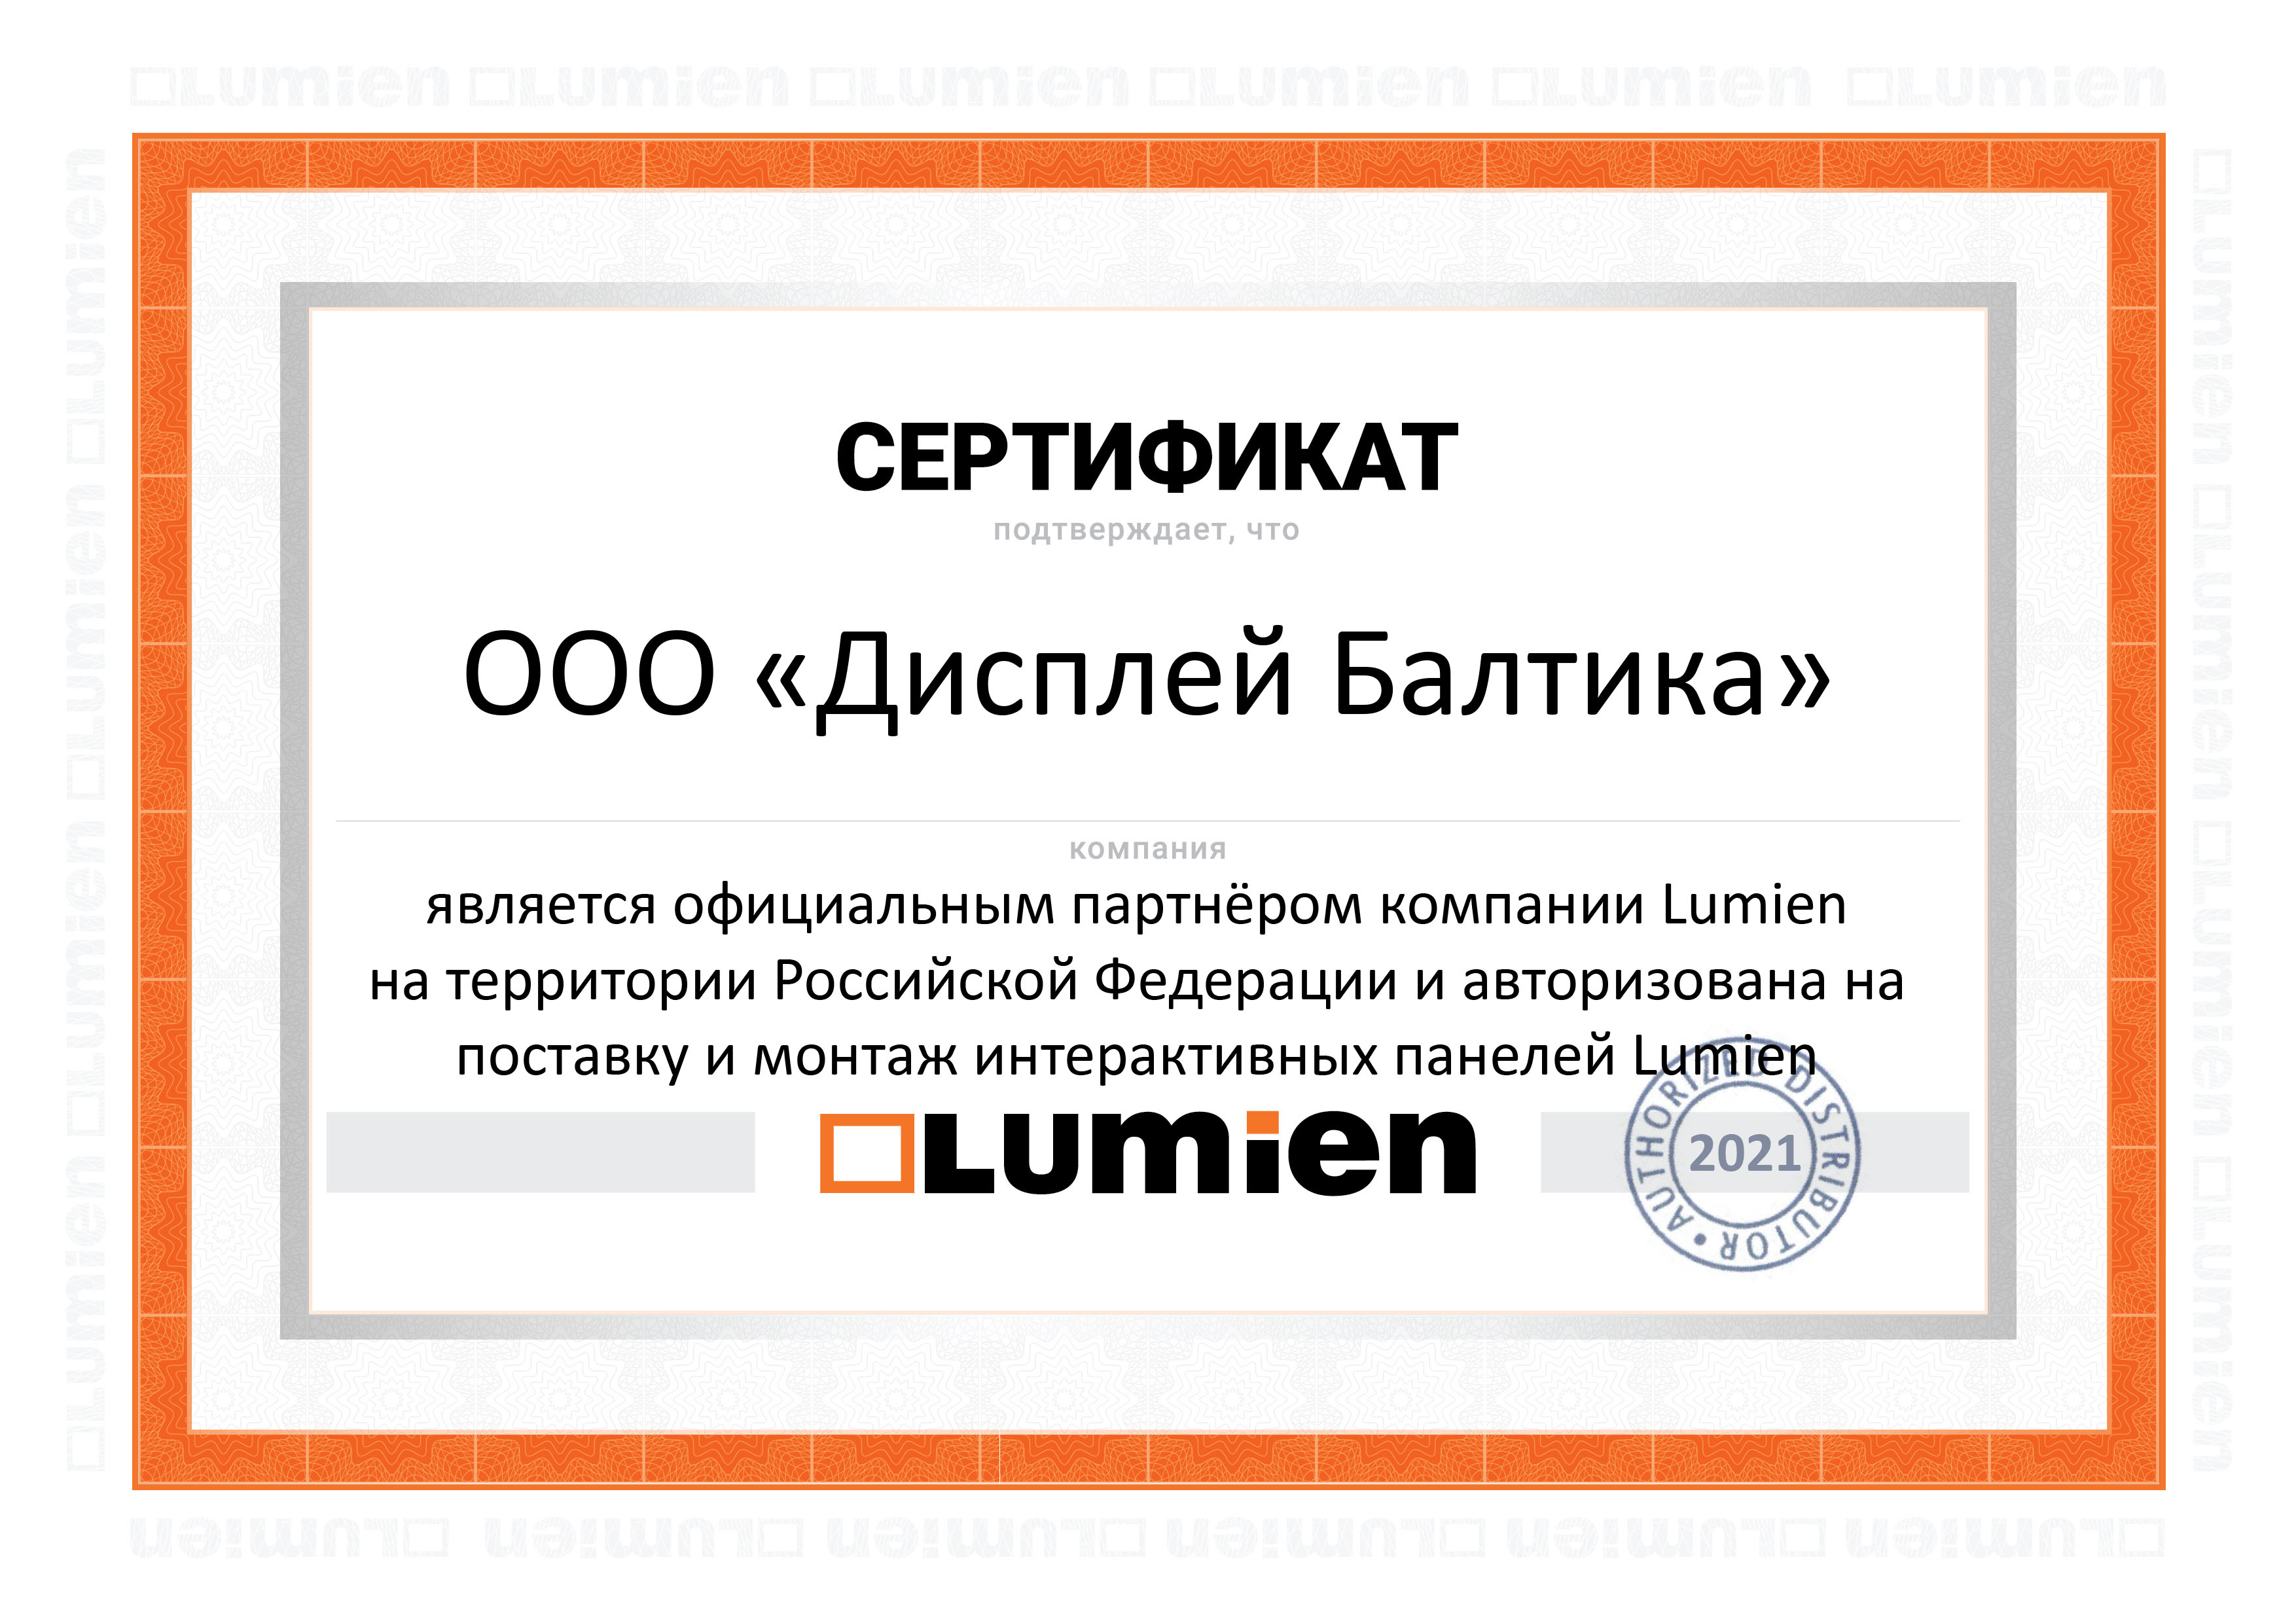 Компания Display Group получила статус официального партнера Lumien.